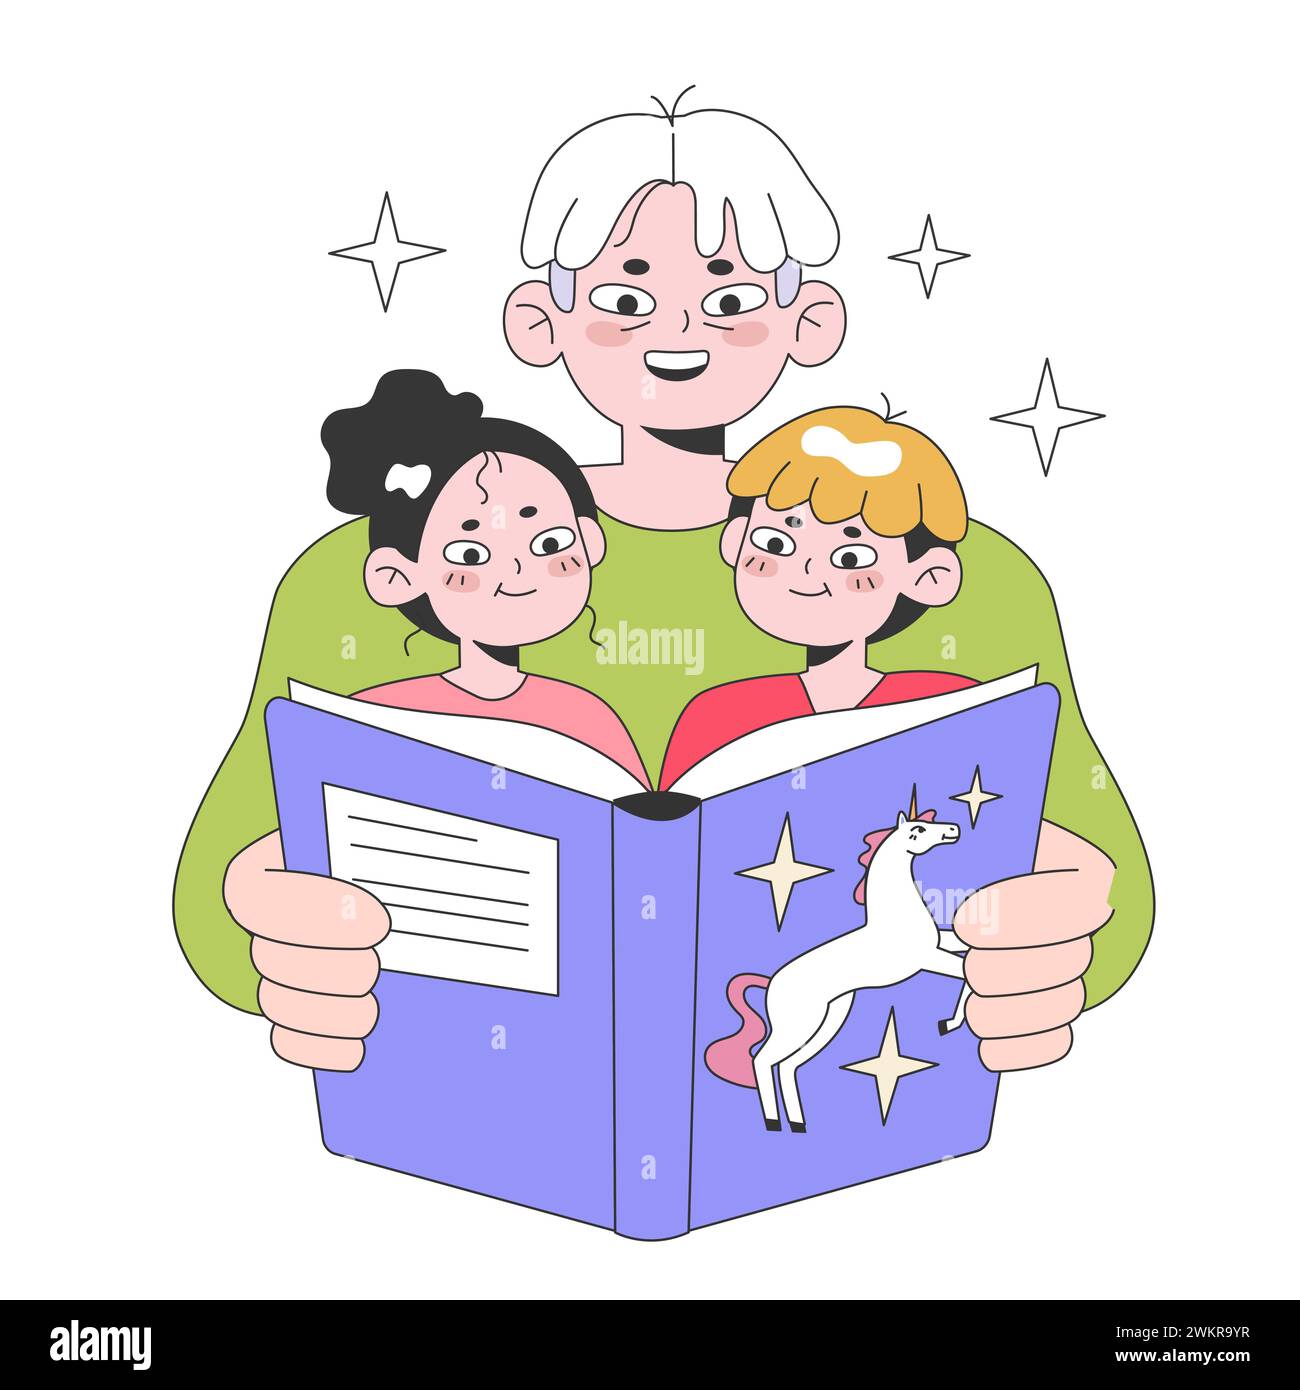 Großvater liest den Enkeln ein Buch. Charaktere, die ein Märchen lesen. Alt werden und Reifen, in den Ruhestand gehen und Zeit mit der Familie verbringen. Erfahrungen älterer Menschen. Illustration des flachen Vektors. Stock Vektor